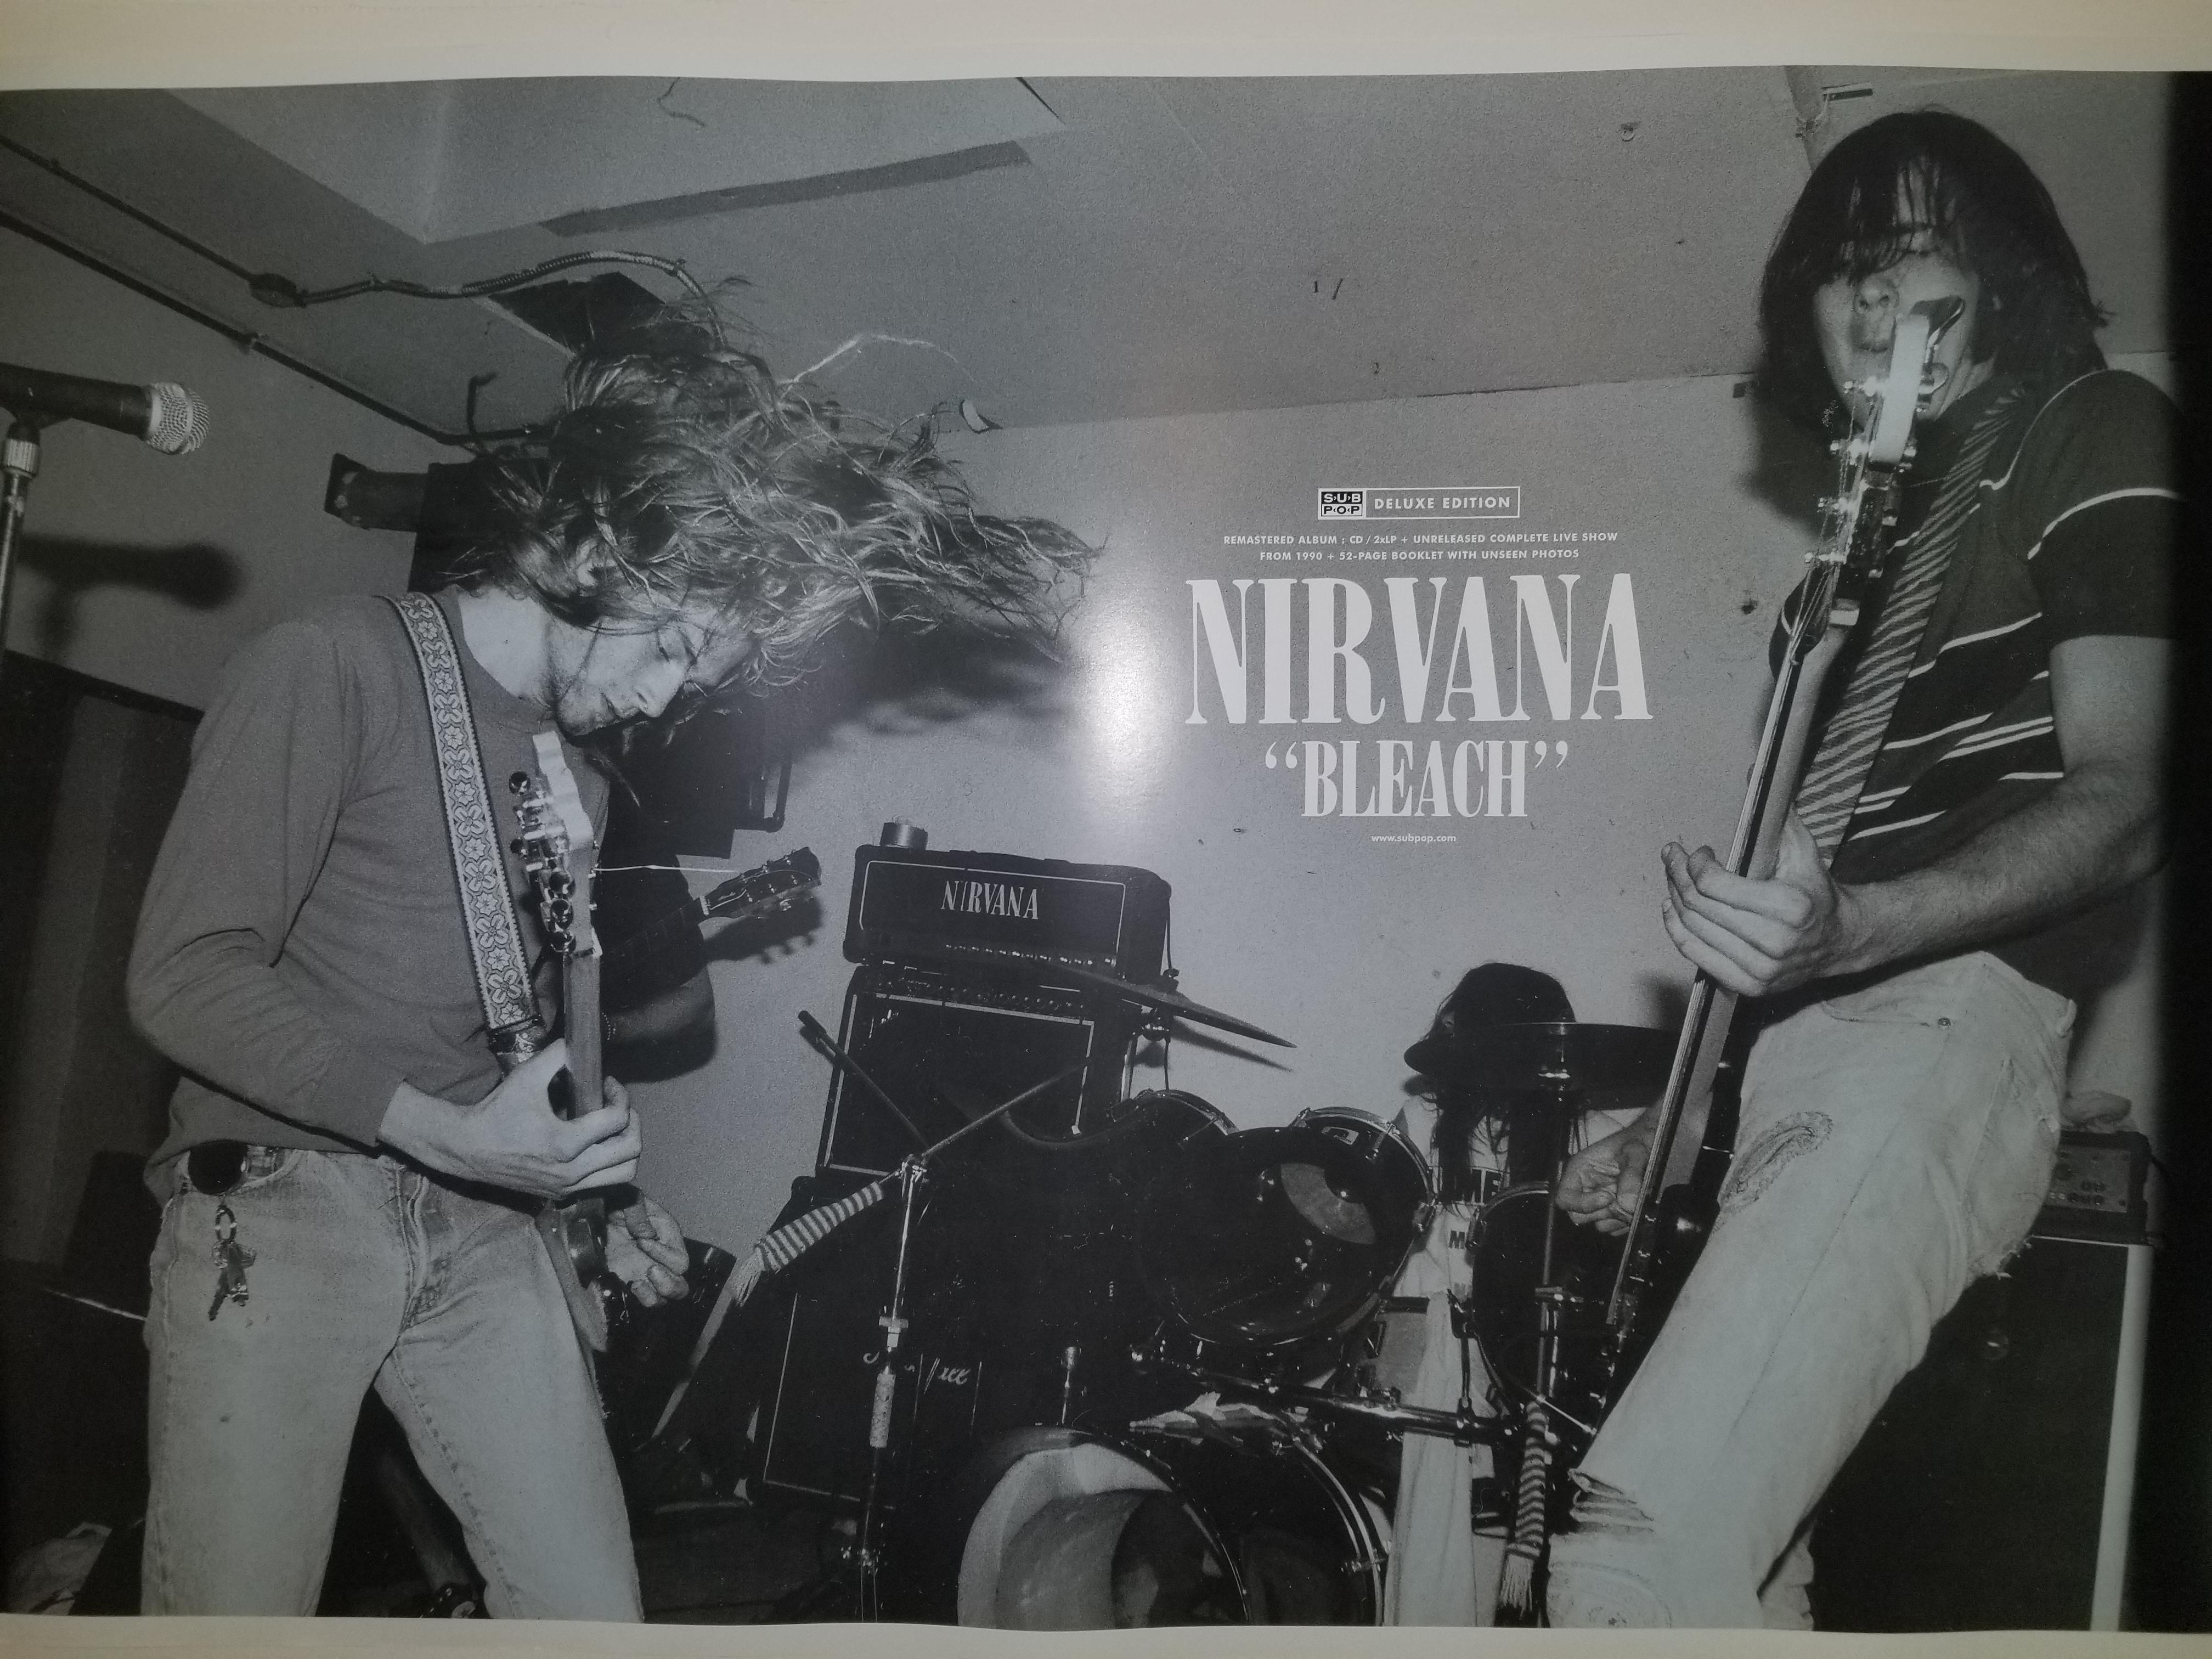 Bleach poster I just got: Nirvana